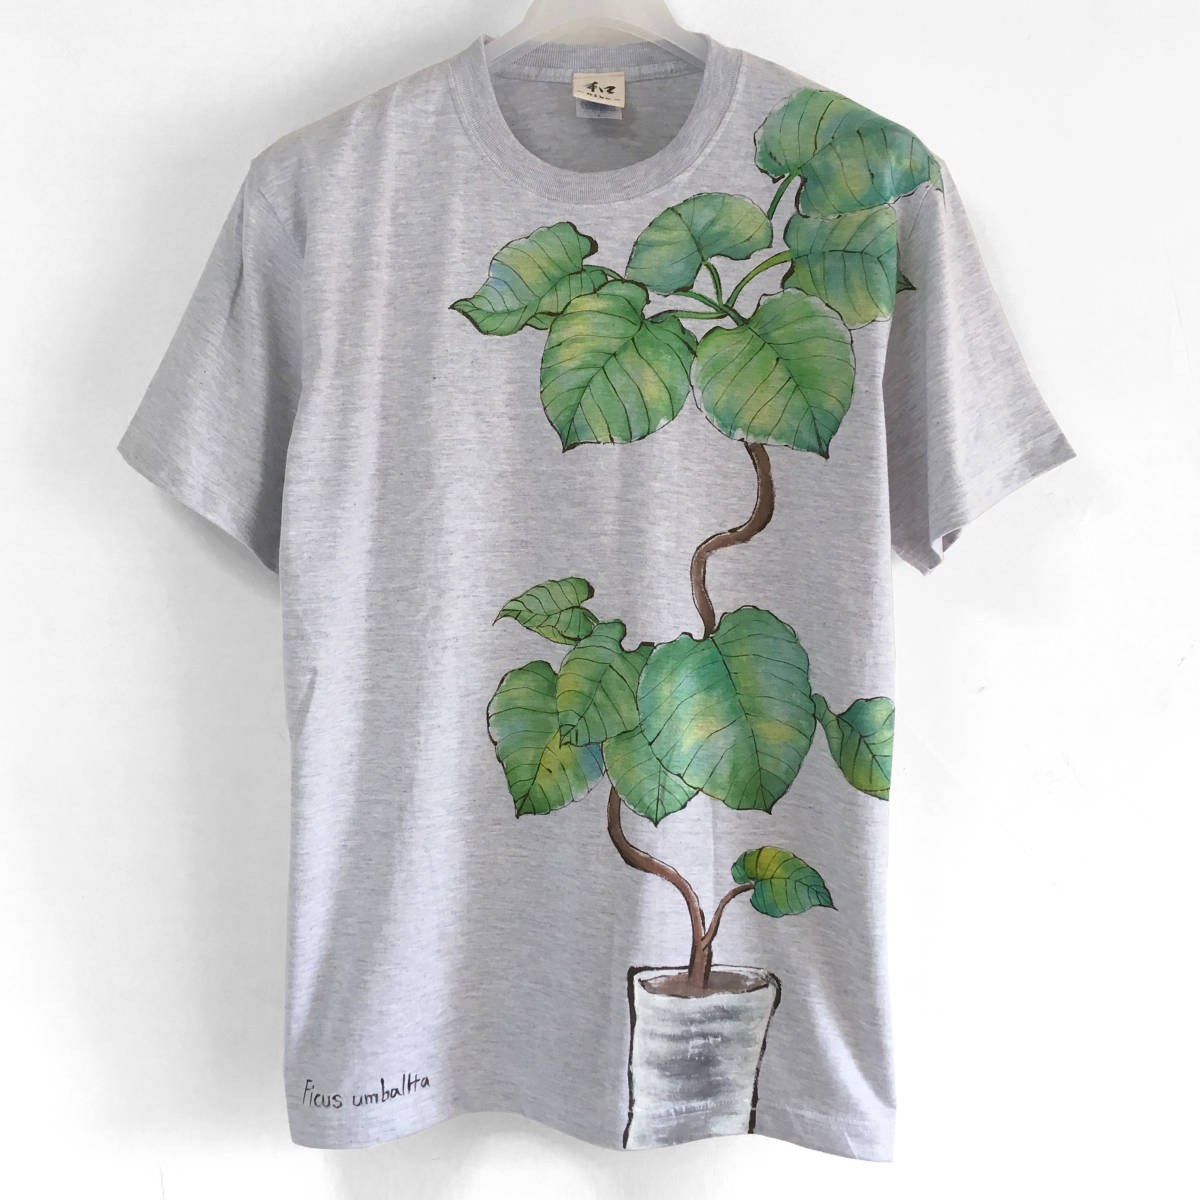 Herren T-Shirt L Größe Zimmerpflanze Ficus umbellata Muster T-Shirt Handgezeichnetes botanisches T-Shirt Vatertag Pflanzenkunst handgefertigt, Größe L, Rundhals, gemustert